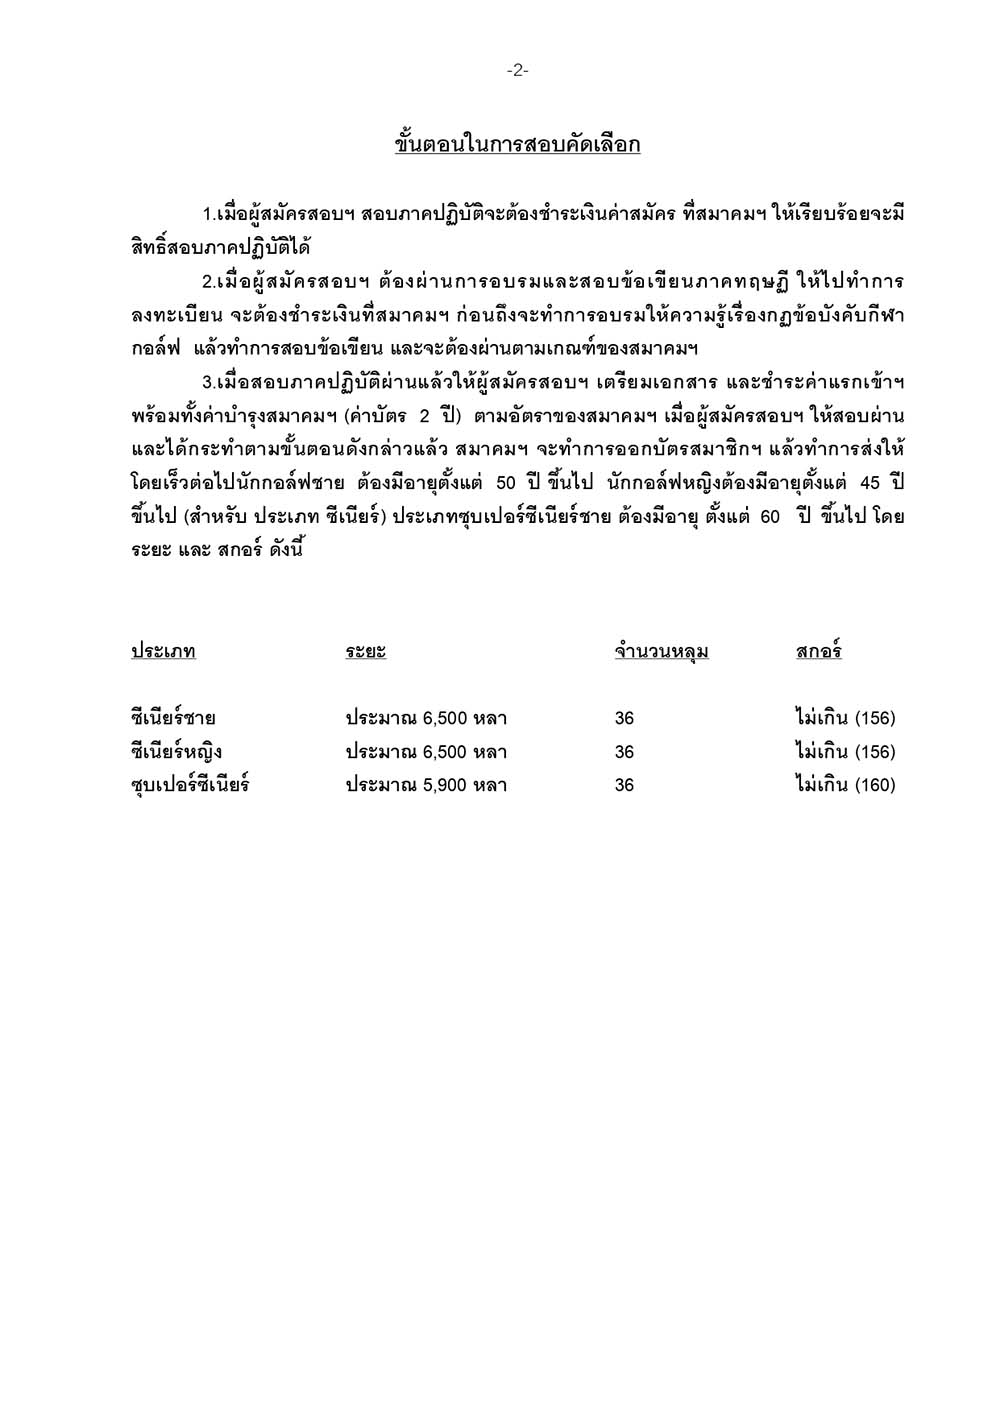 หนังสือสอบเป็นภาษาไทย สนามกอล์ฟ วอเตอร์มิ page 02